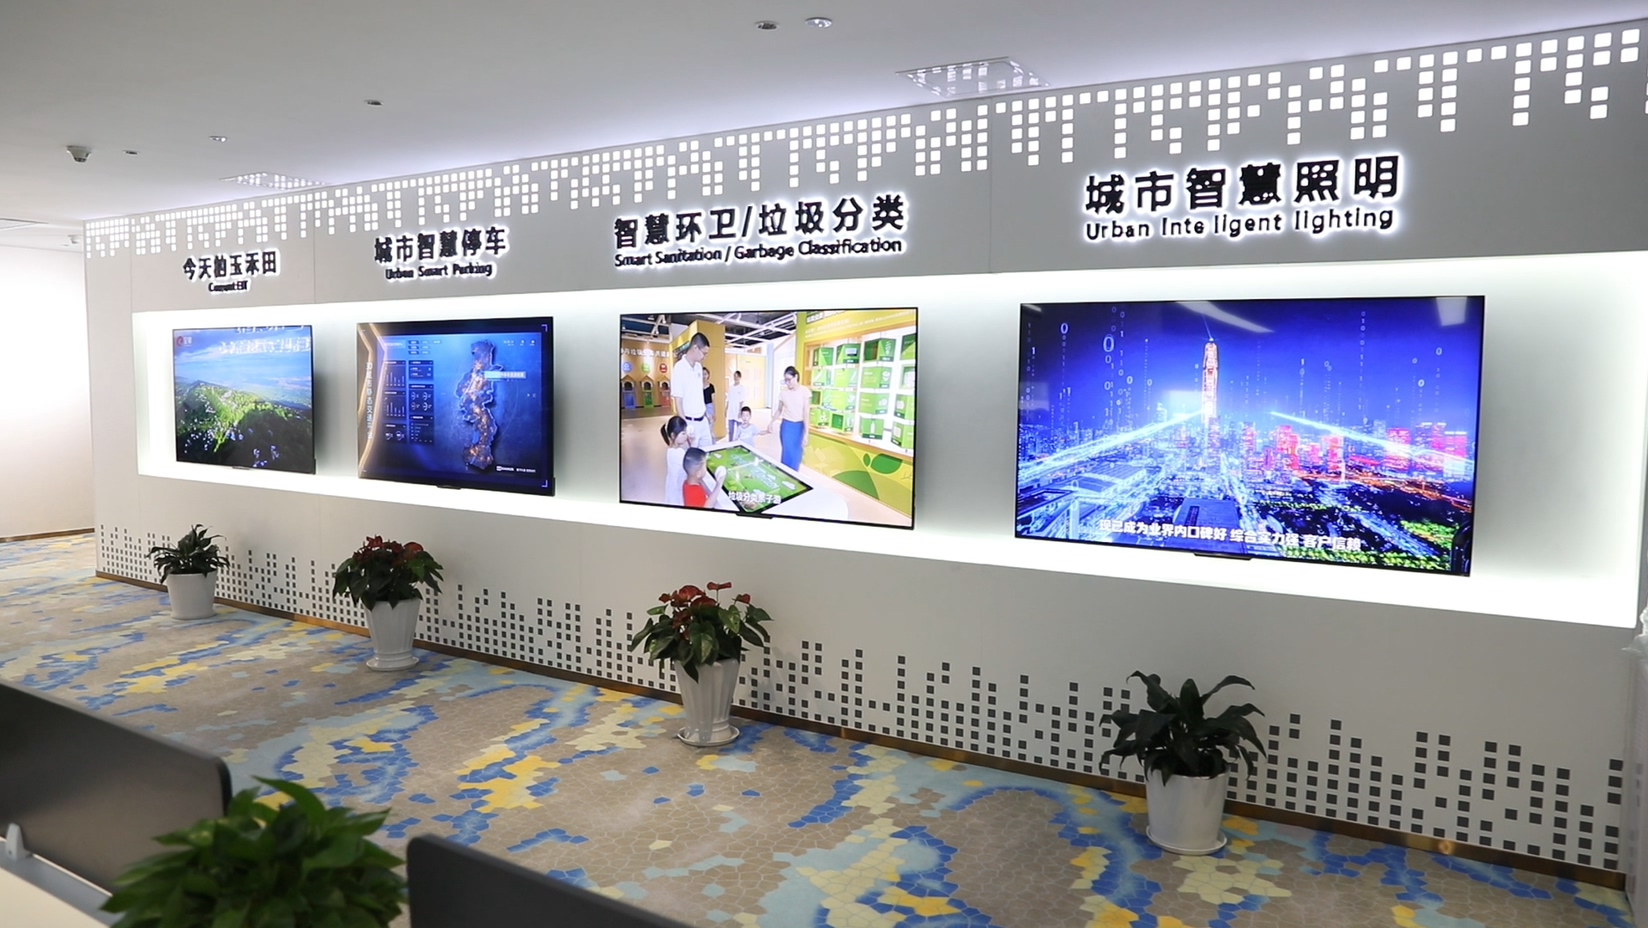 玉禾田全資子公司曉潤科技與杭州海康威視公司簽署戰略合作協議